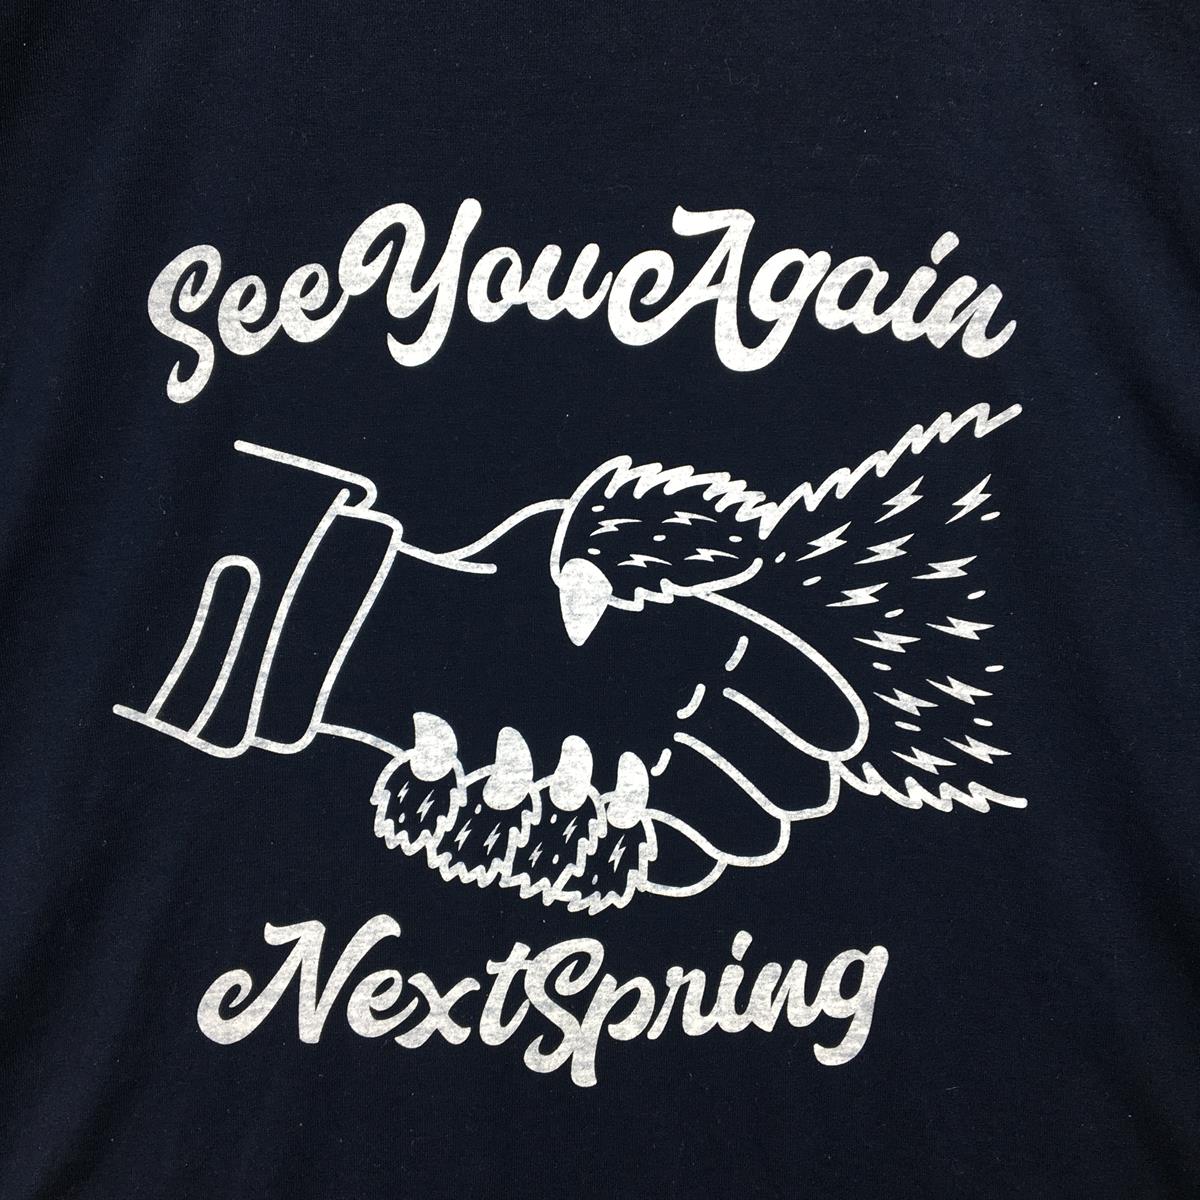 【MEN's L】 リッジマウンテンギア 2021 See You Again Next Spring Tシャツ Hand Shake 熊保護活動 生産終了モデル 入手困難 RIDGE MOUNTAIN GEAR ネイビー系